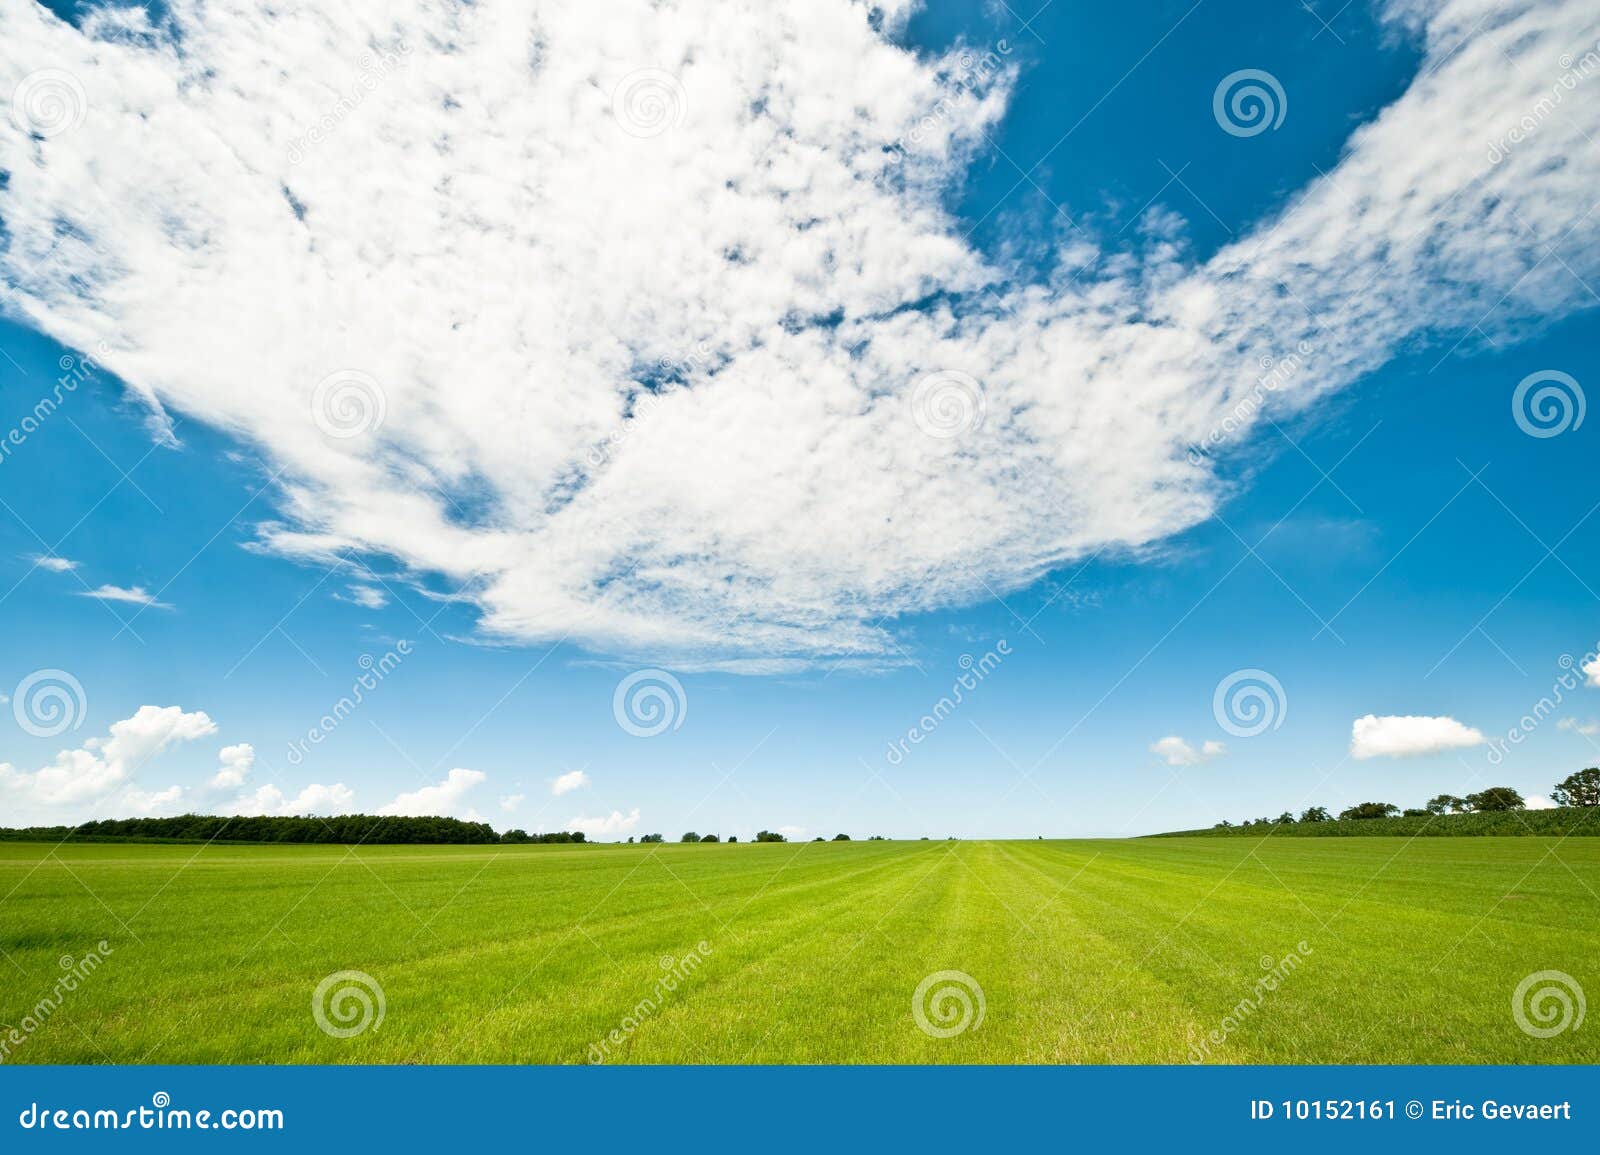 Priorità bassa di estate con erba verde fresca e cielo blu luminoso